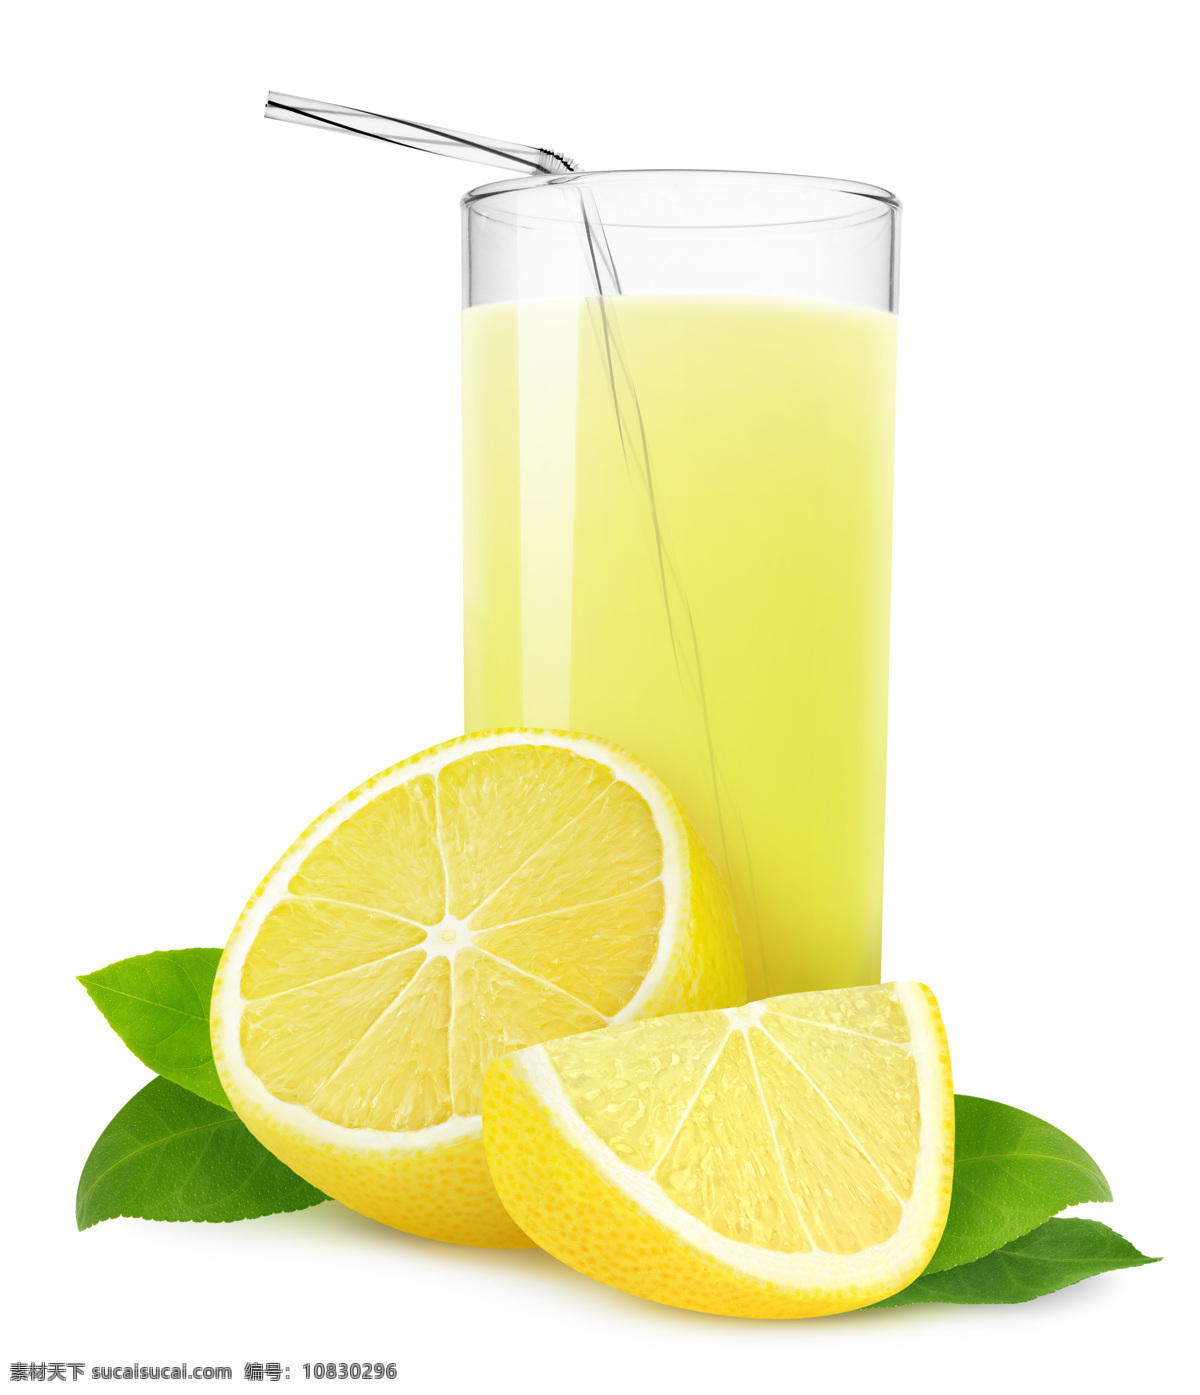 柠檬汁 柠檬水 柠檬片 柠檬 果汁 冒水泡 清爽 解渴 果汁饮料 餐饮美食 饮料酒水